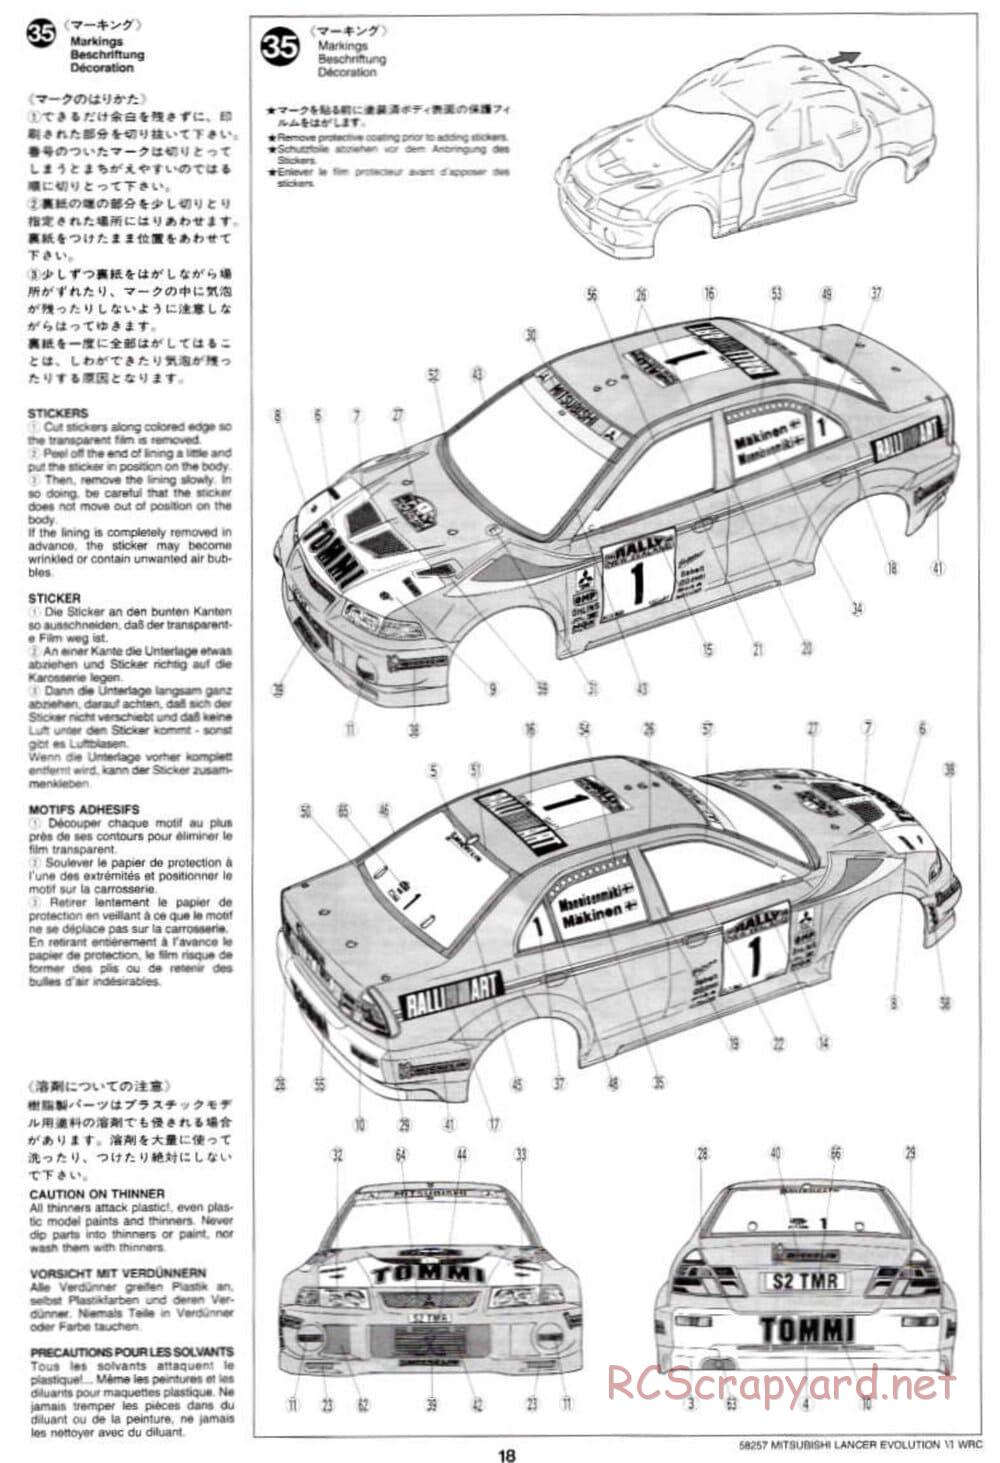 Tamiya - Mitsubishi Lancer Evolution VI WRC - TB-01 Chassis - Manual - Page 18